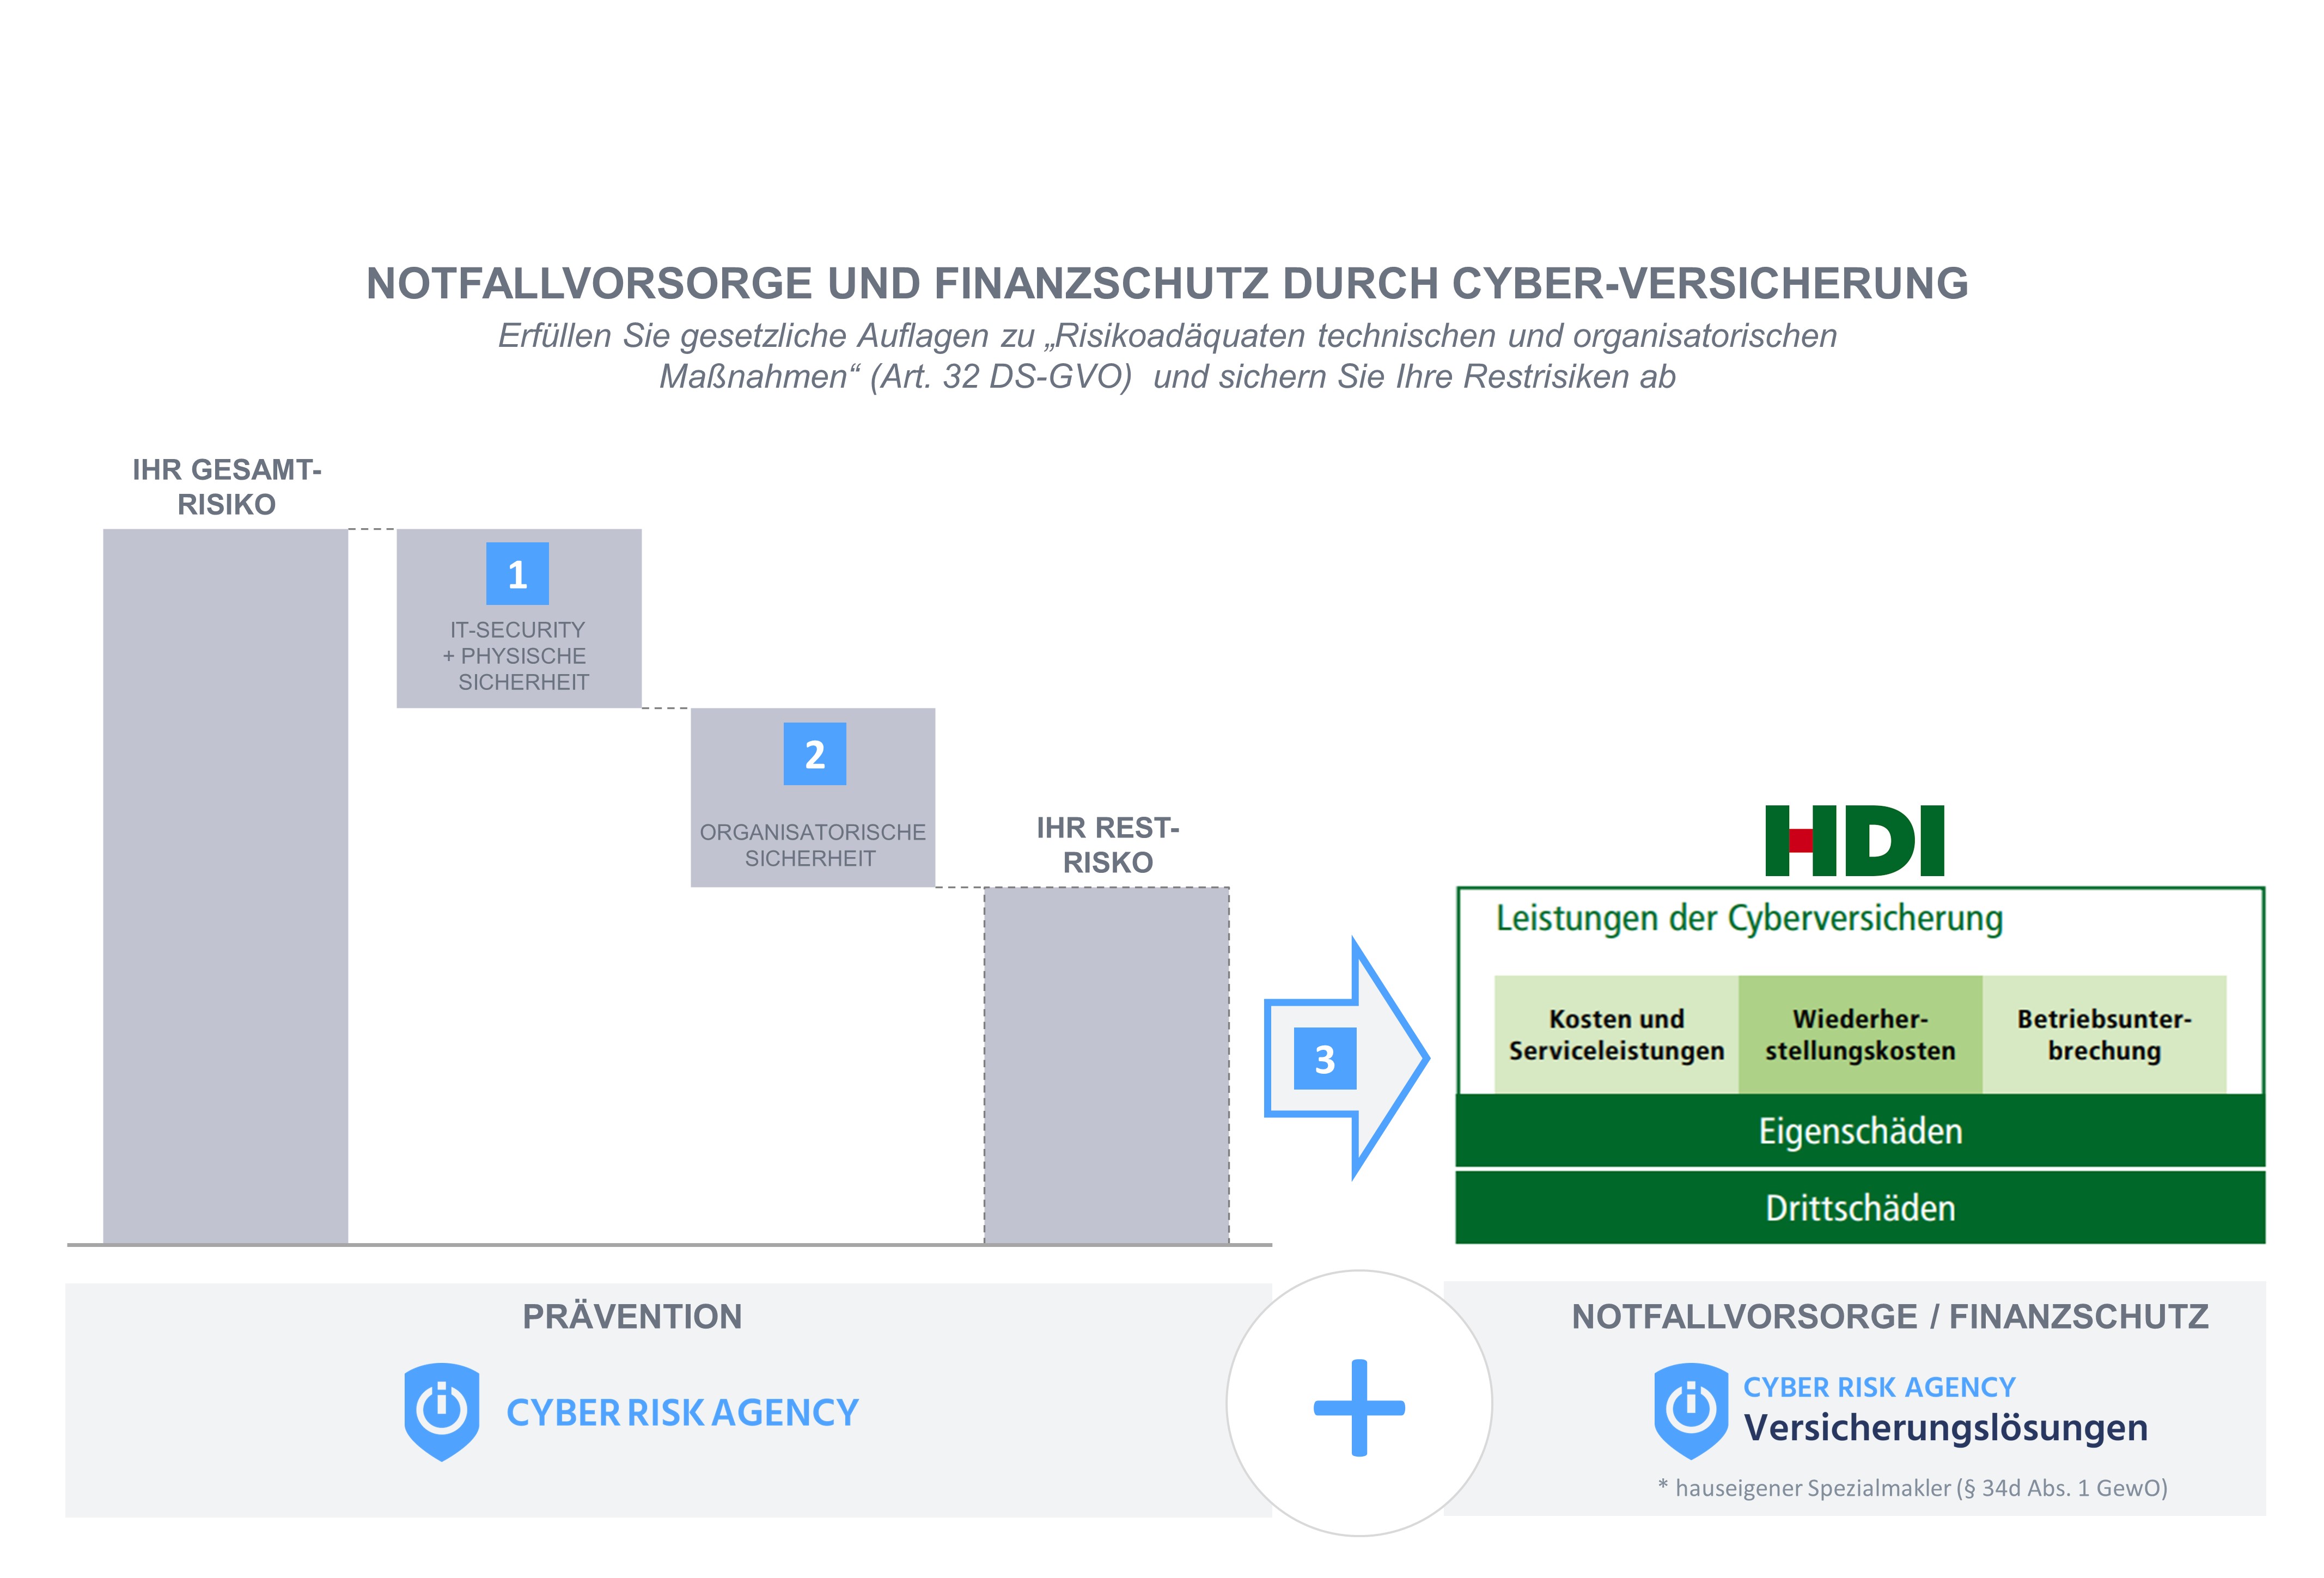 HDI - Cyber-Versicherung für Firmen und Freie Berufe